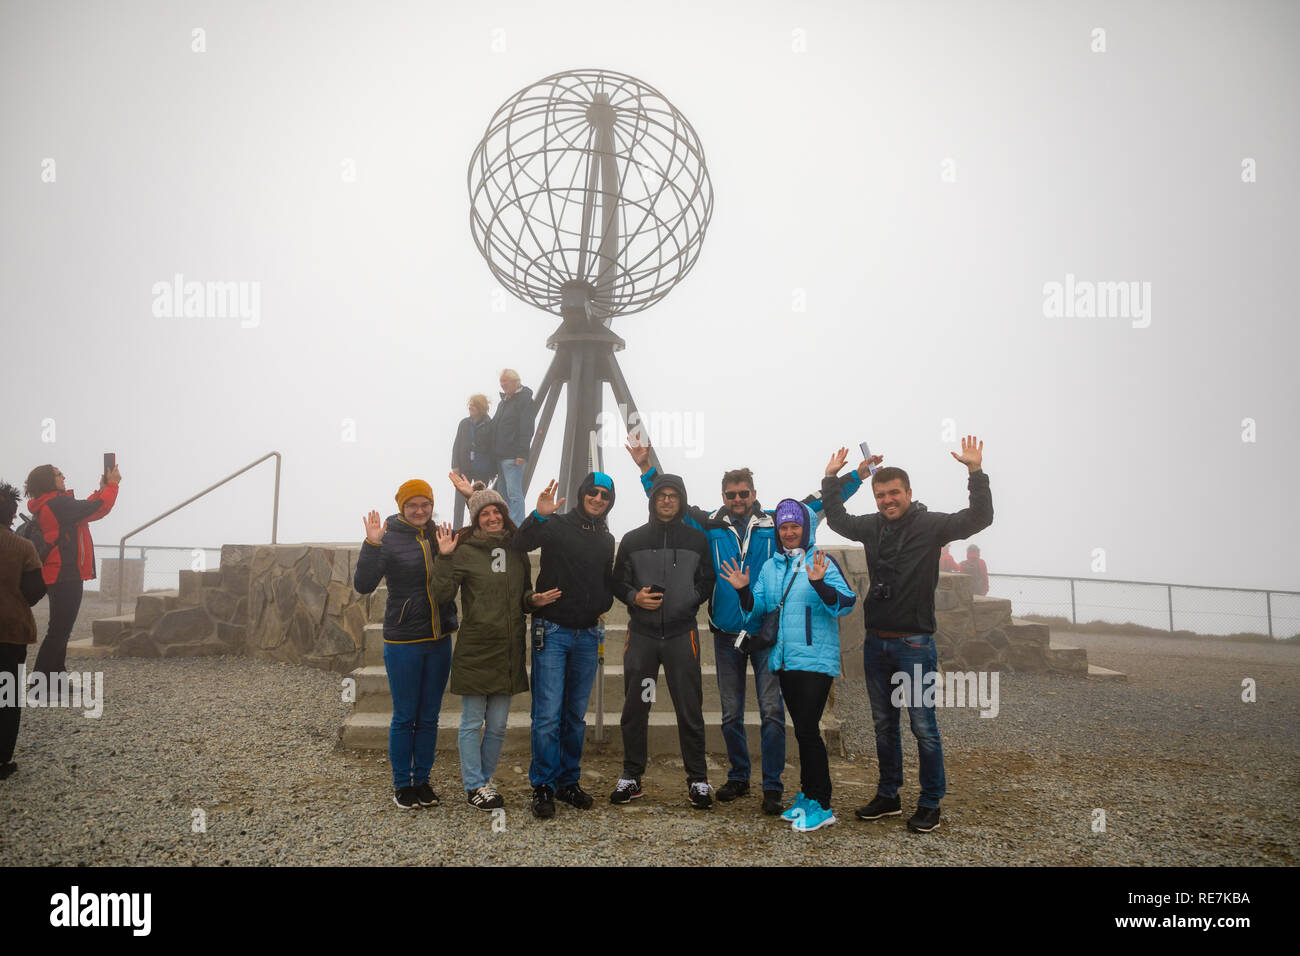 Nordkap, Norwegen - 26.06.2018: Gruppe von Touristen kommen zu den berühmten nordkap und liebe Fotos mit den ikonischen Globus Skulptur zu nehmen, auch auf einem sehr nebligen Tag mit schlechter Sicht, Norwegen Stockfoto